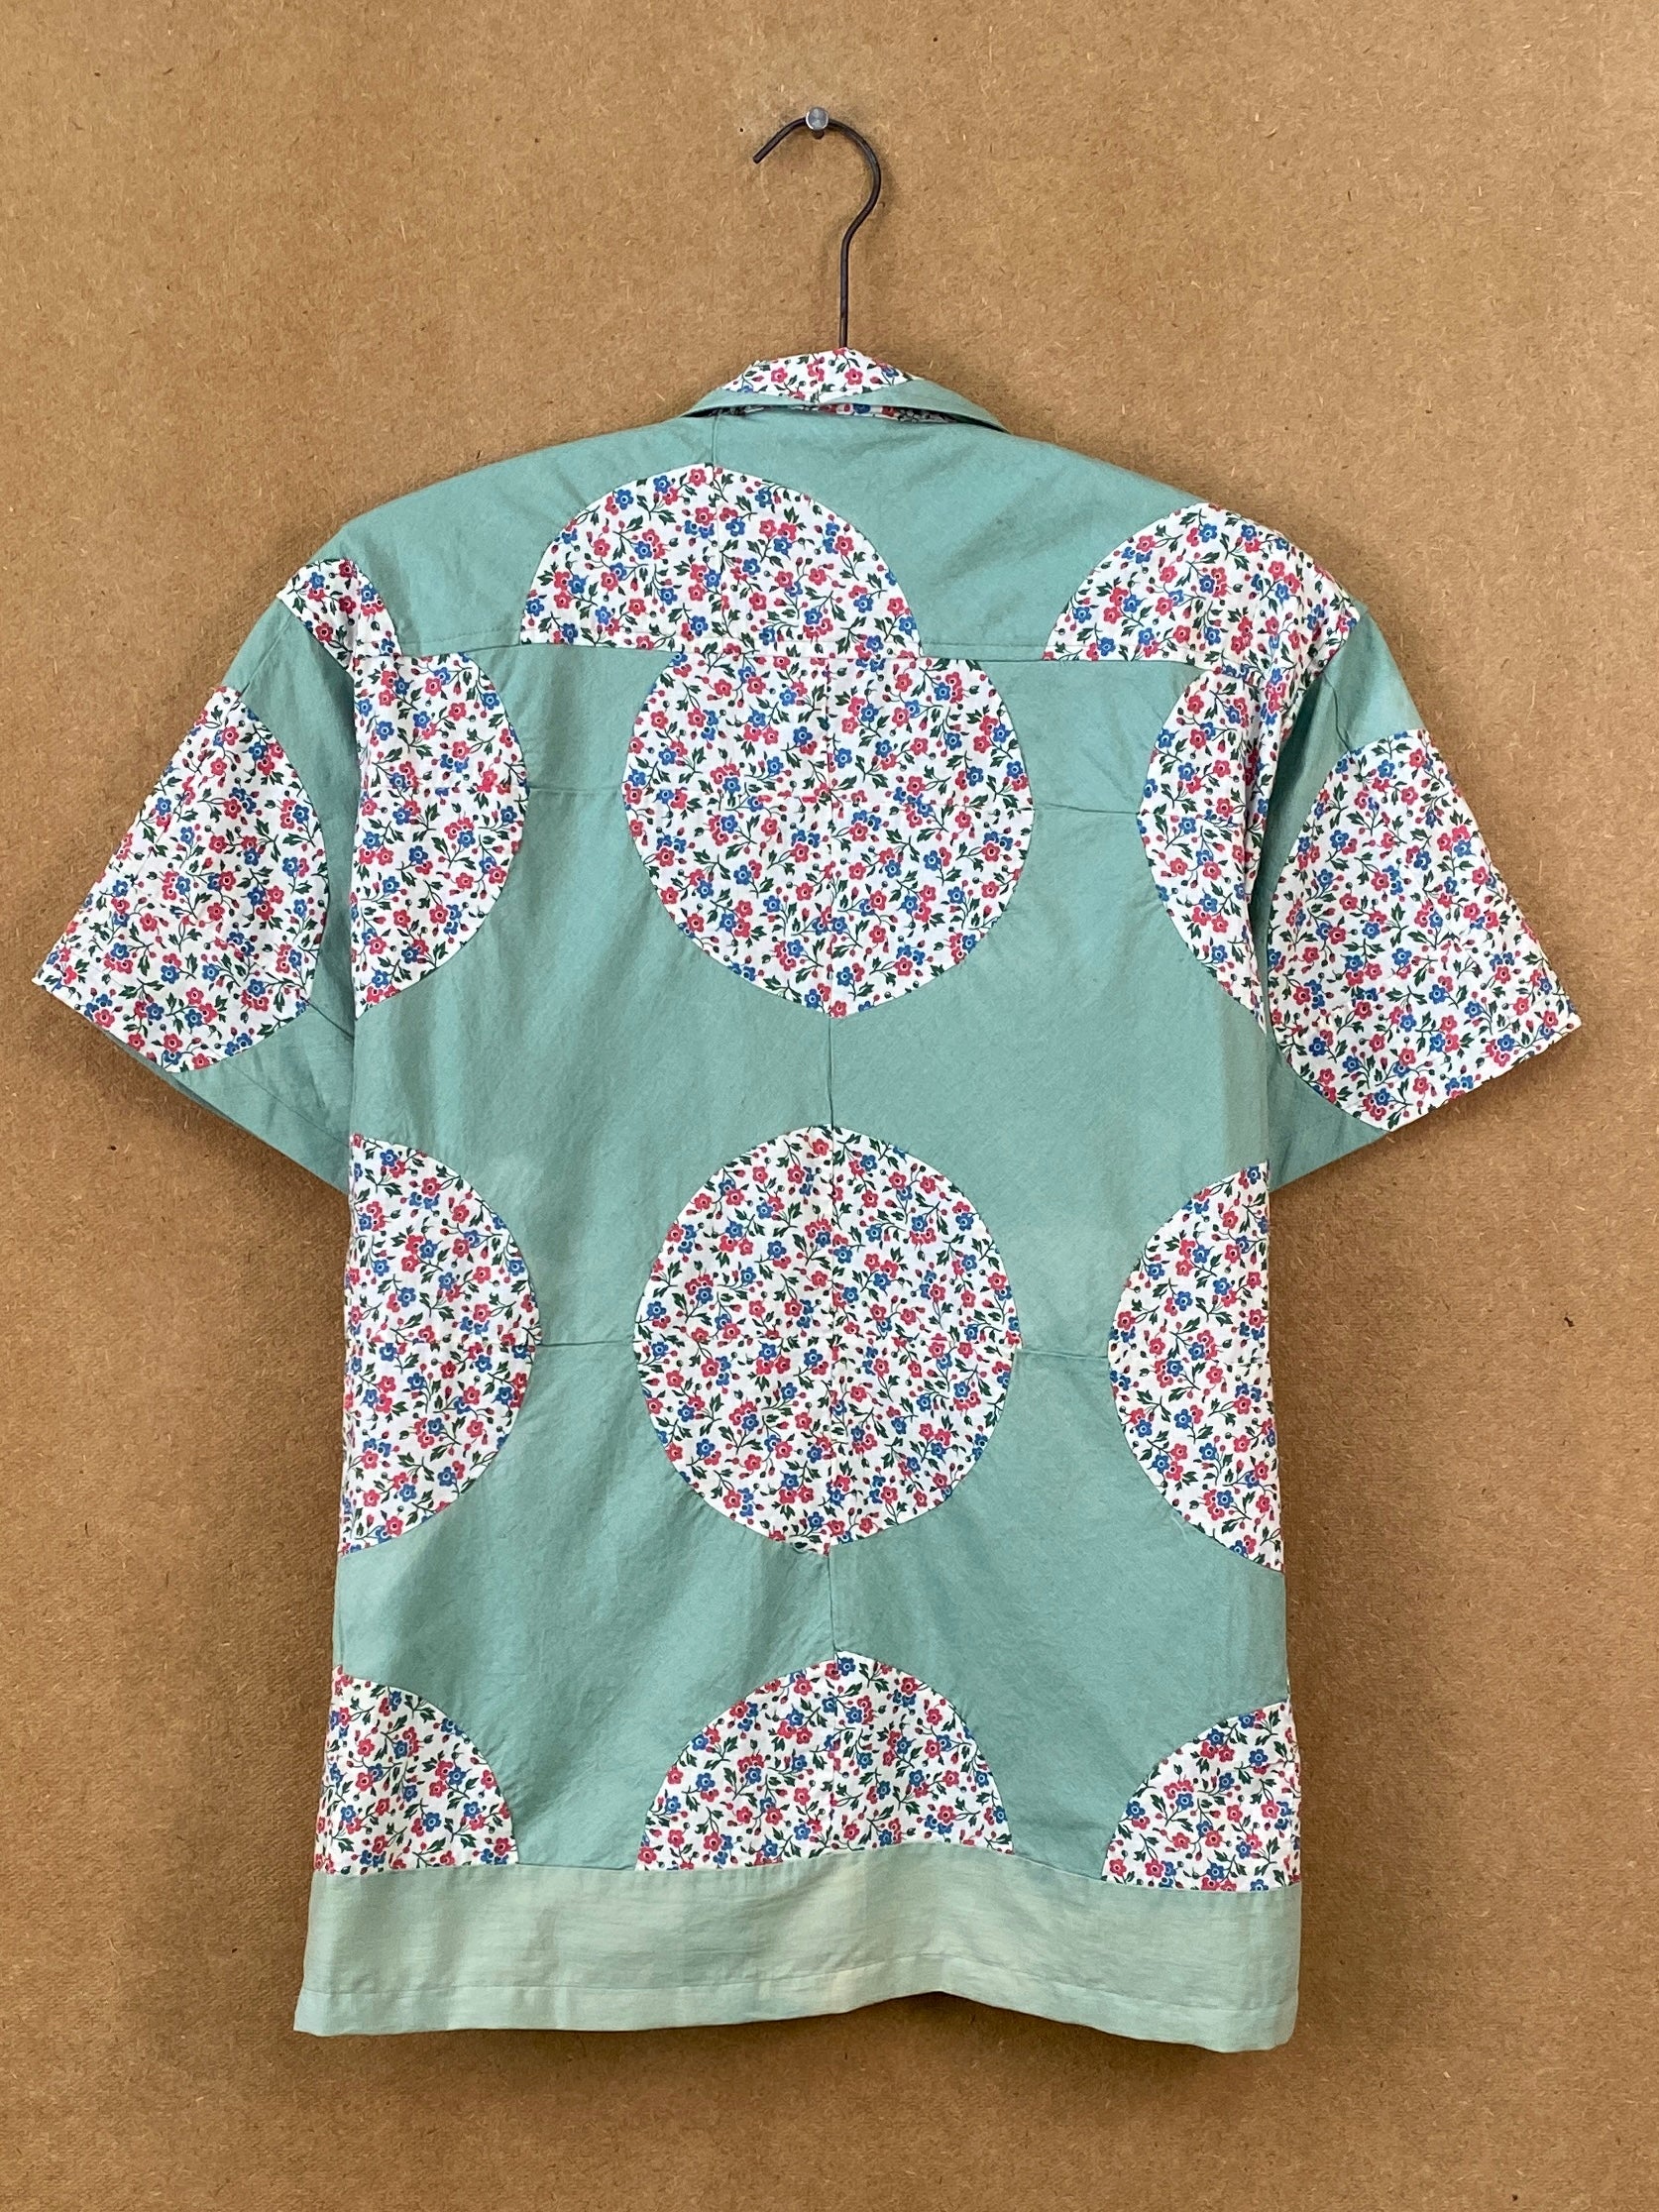 Seafoam Floral Patchwork Shirt - M/L